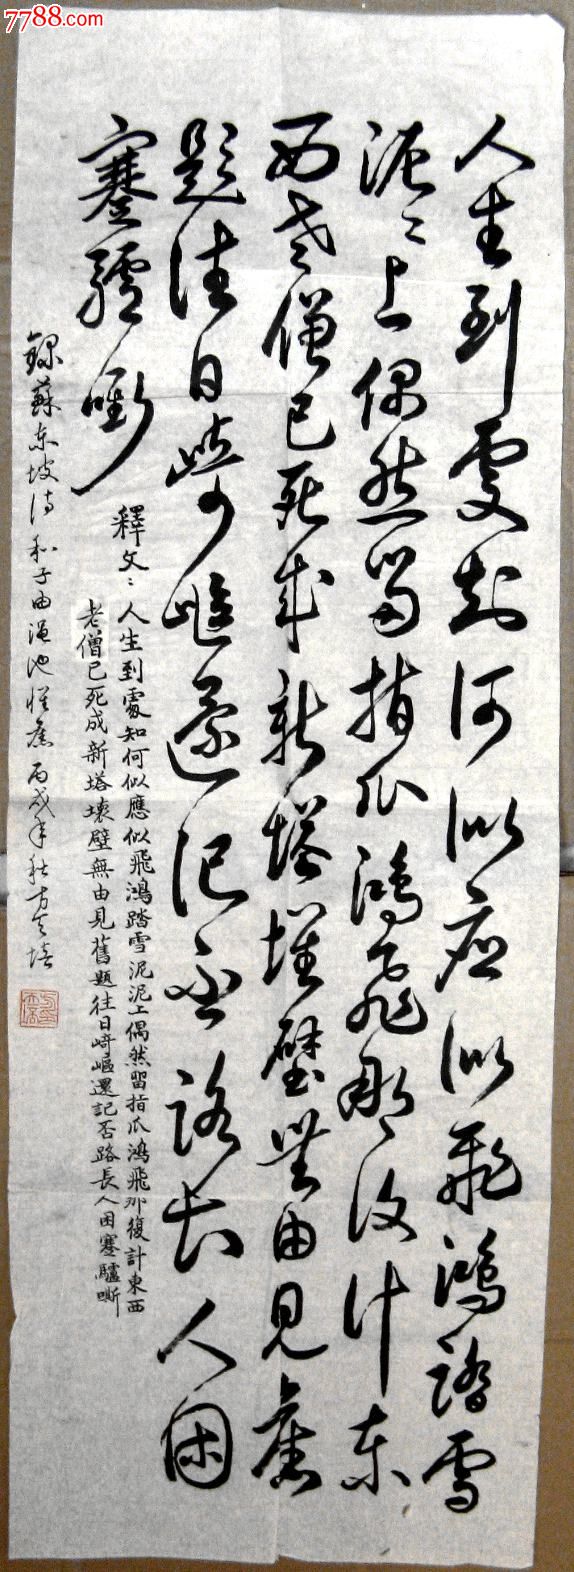 浙江知名老书家小三尺条幅行草录苏东坡诗《和子由渑池怀旧》